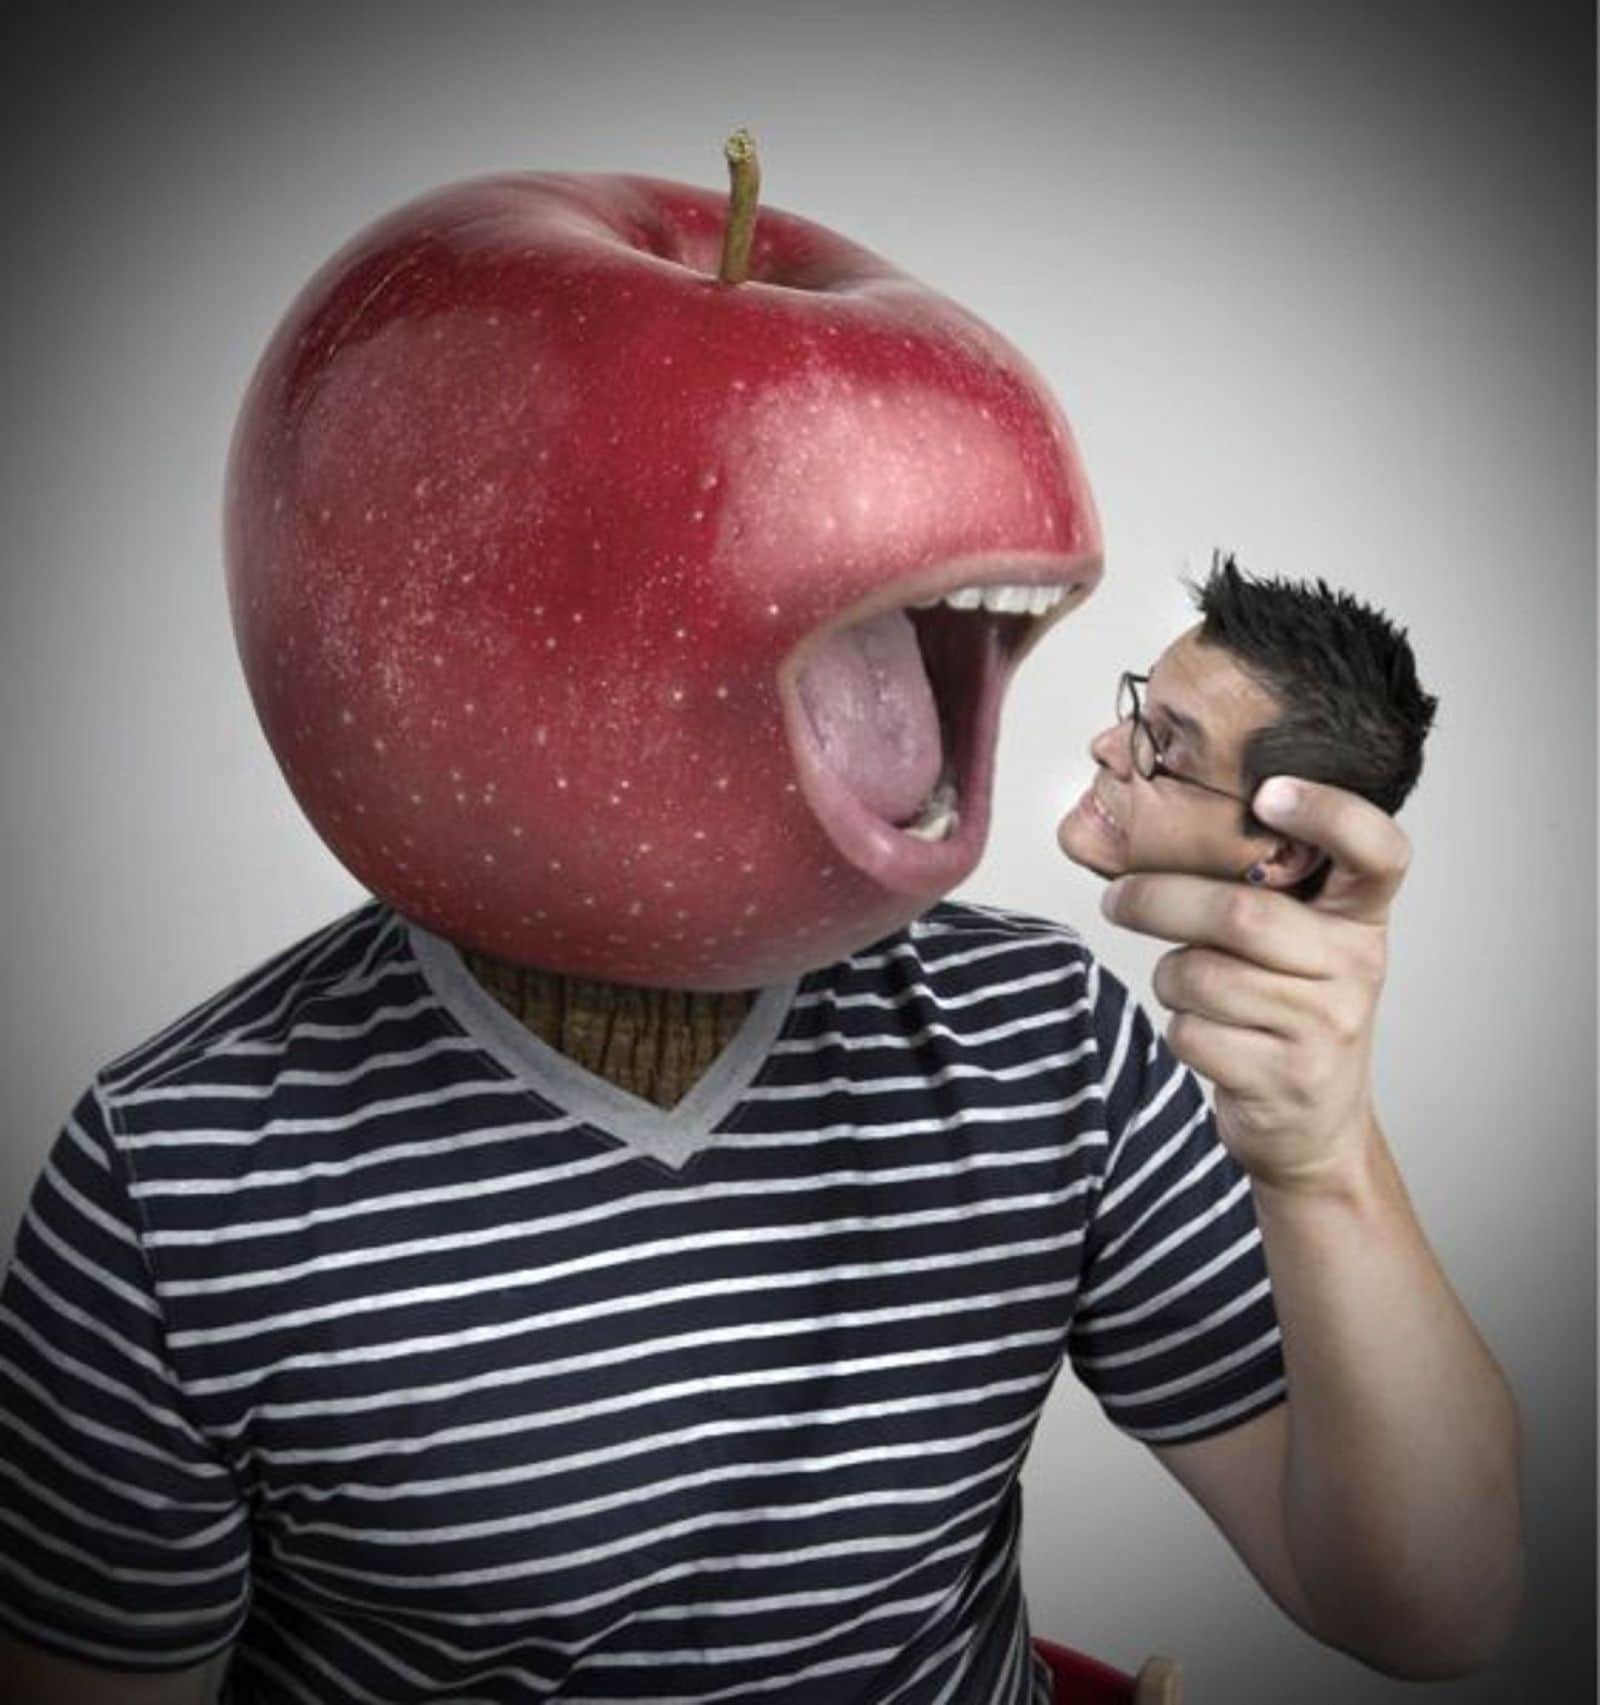 мужчина с яблоком вместо головы